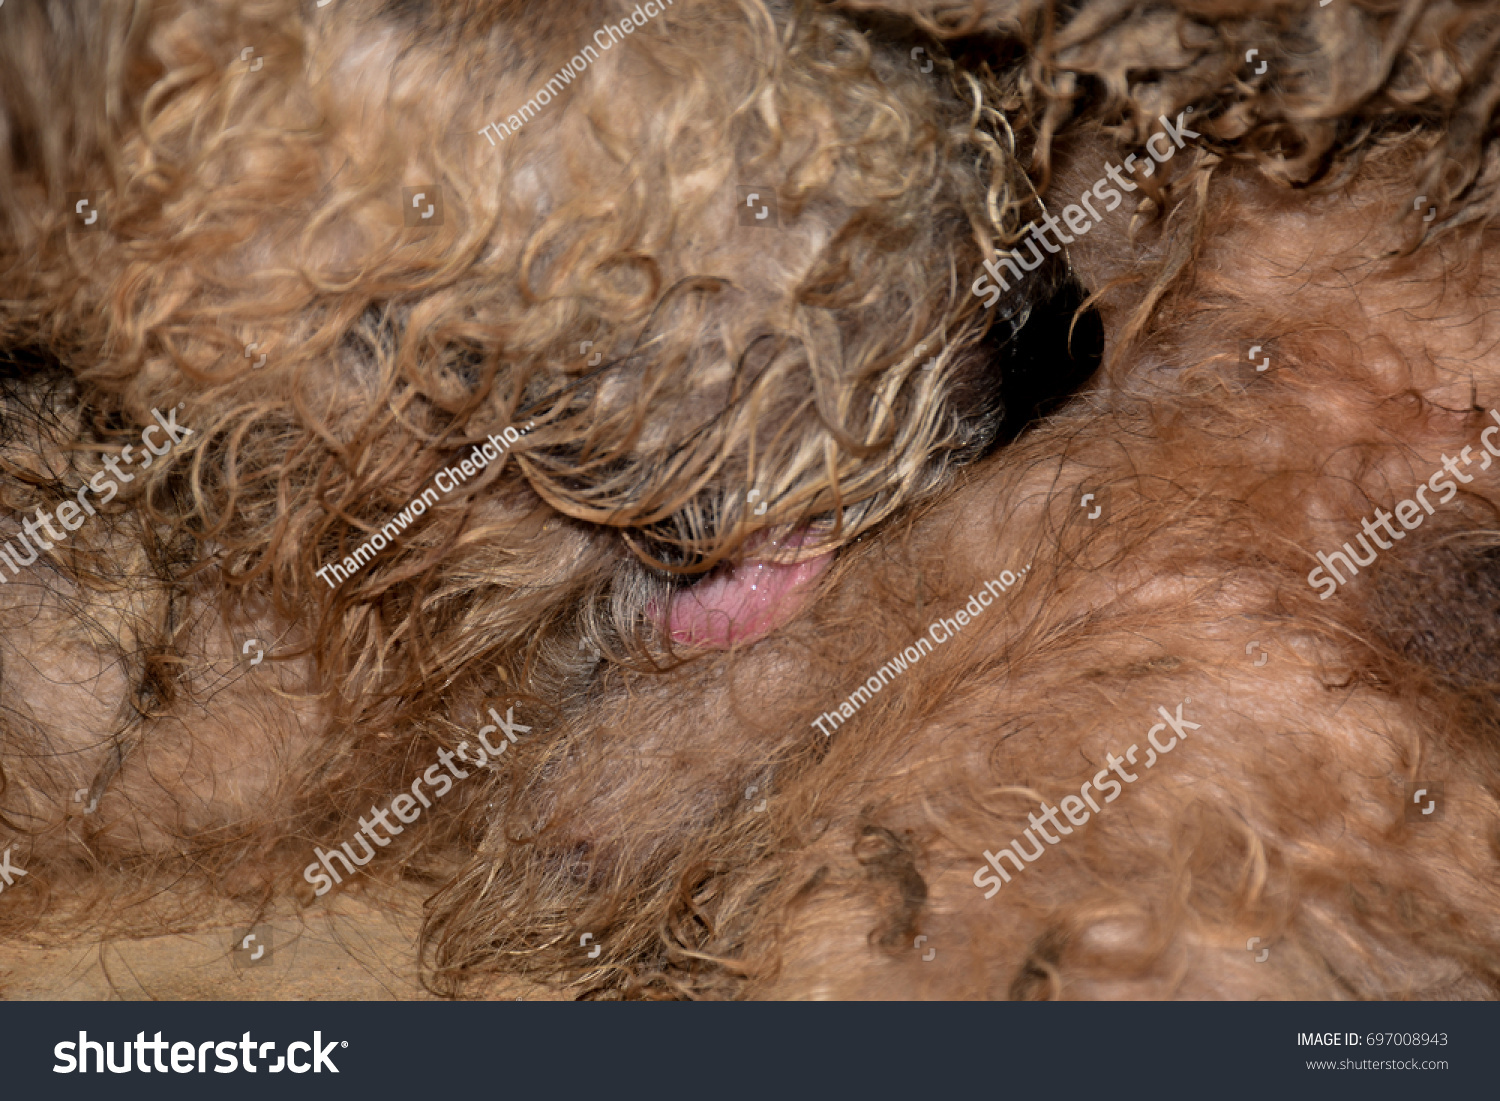 Dog Licking Penis